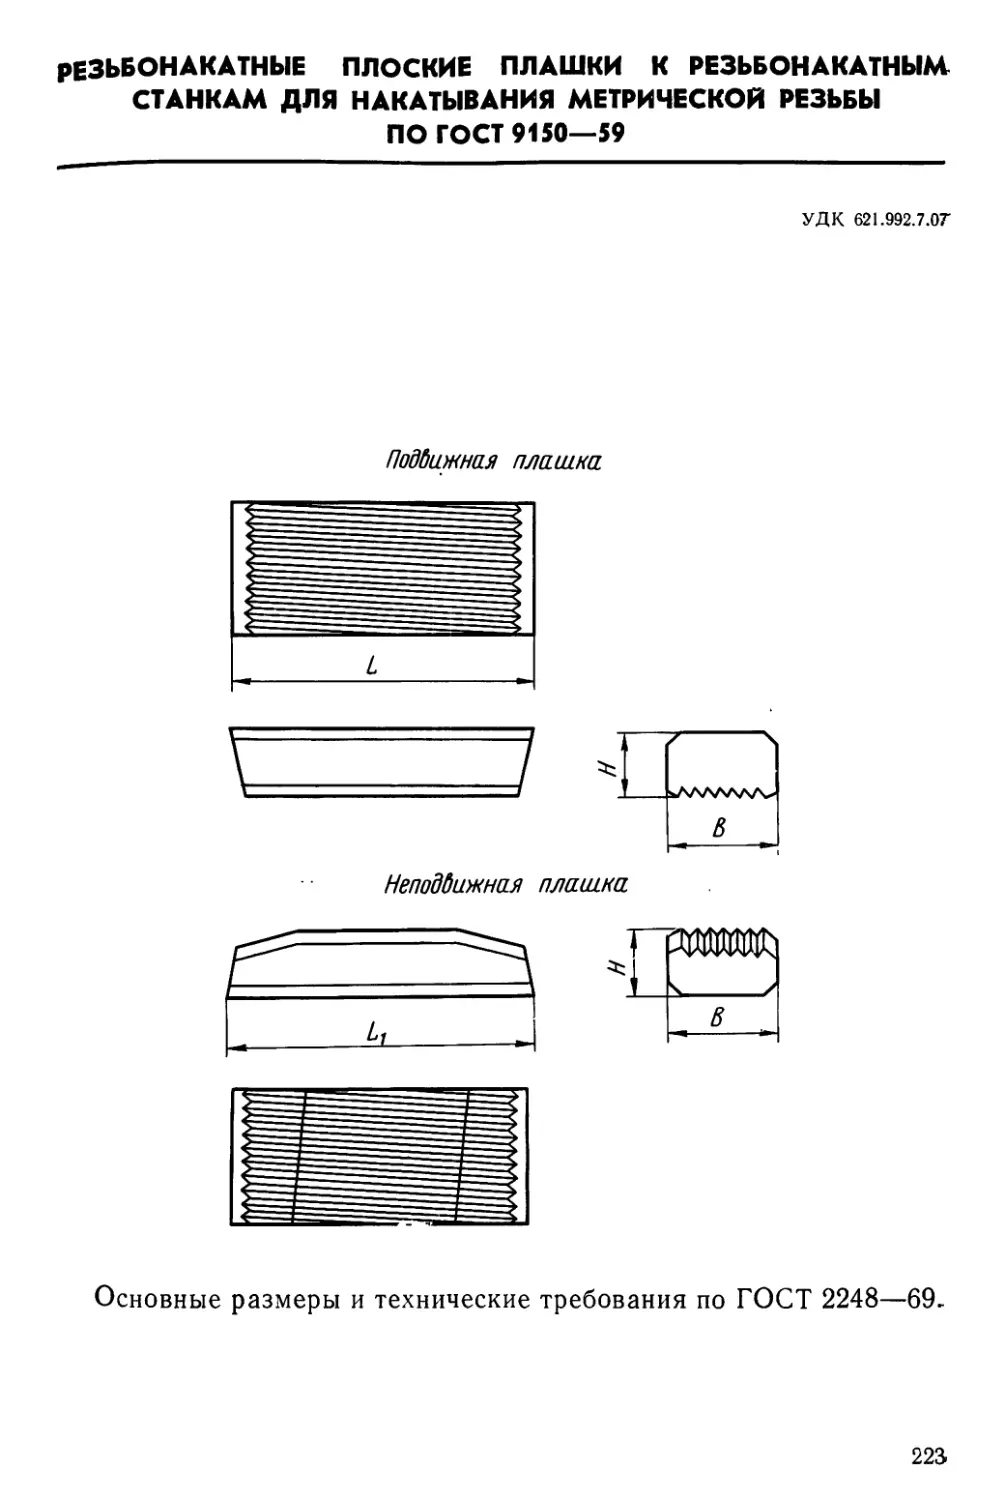 Резьбонакатные плоские плашки к резьбонакатным станкам для накатывания метрической резьбы по ГОСТ 9150—59